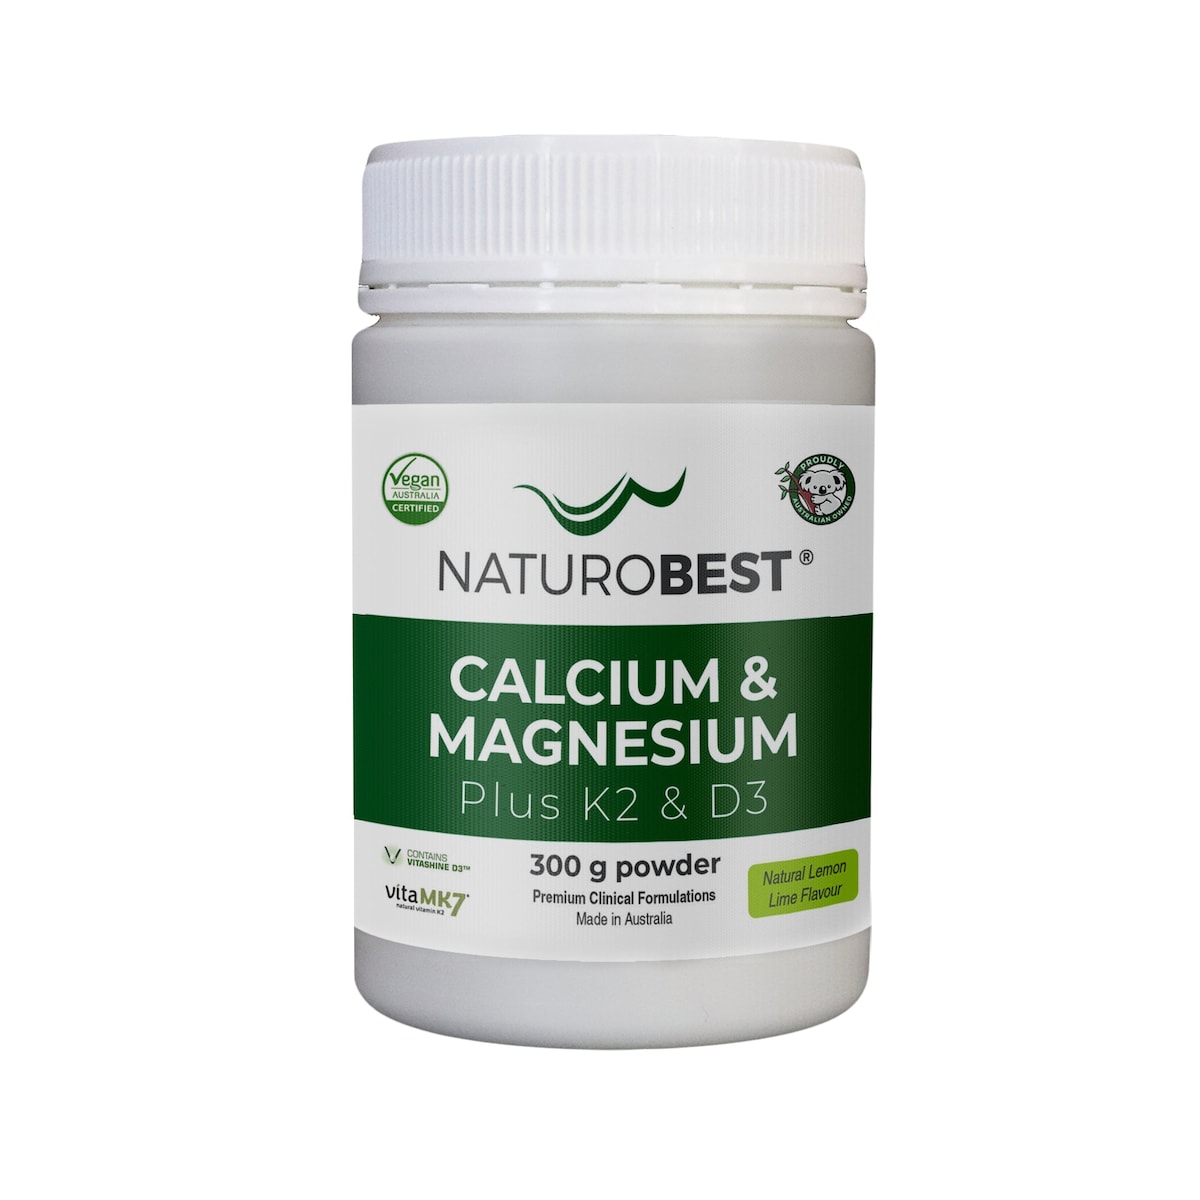 NaturoBest Calcium & Magnesium Plus K2 & D3 300g Australia